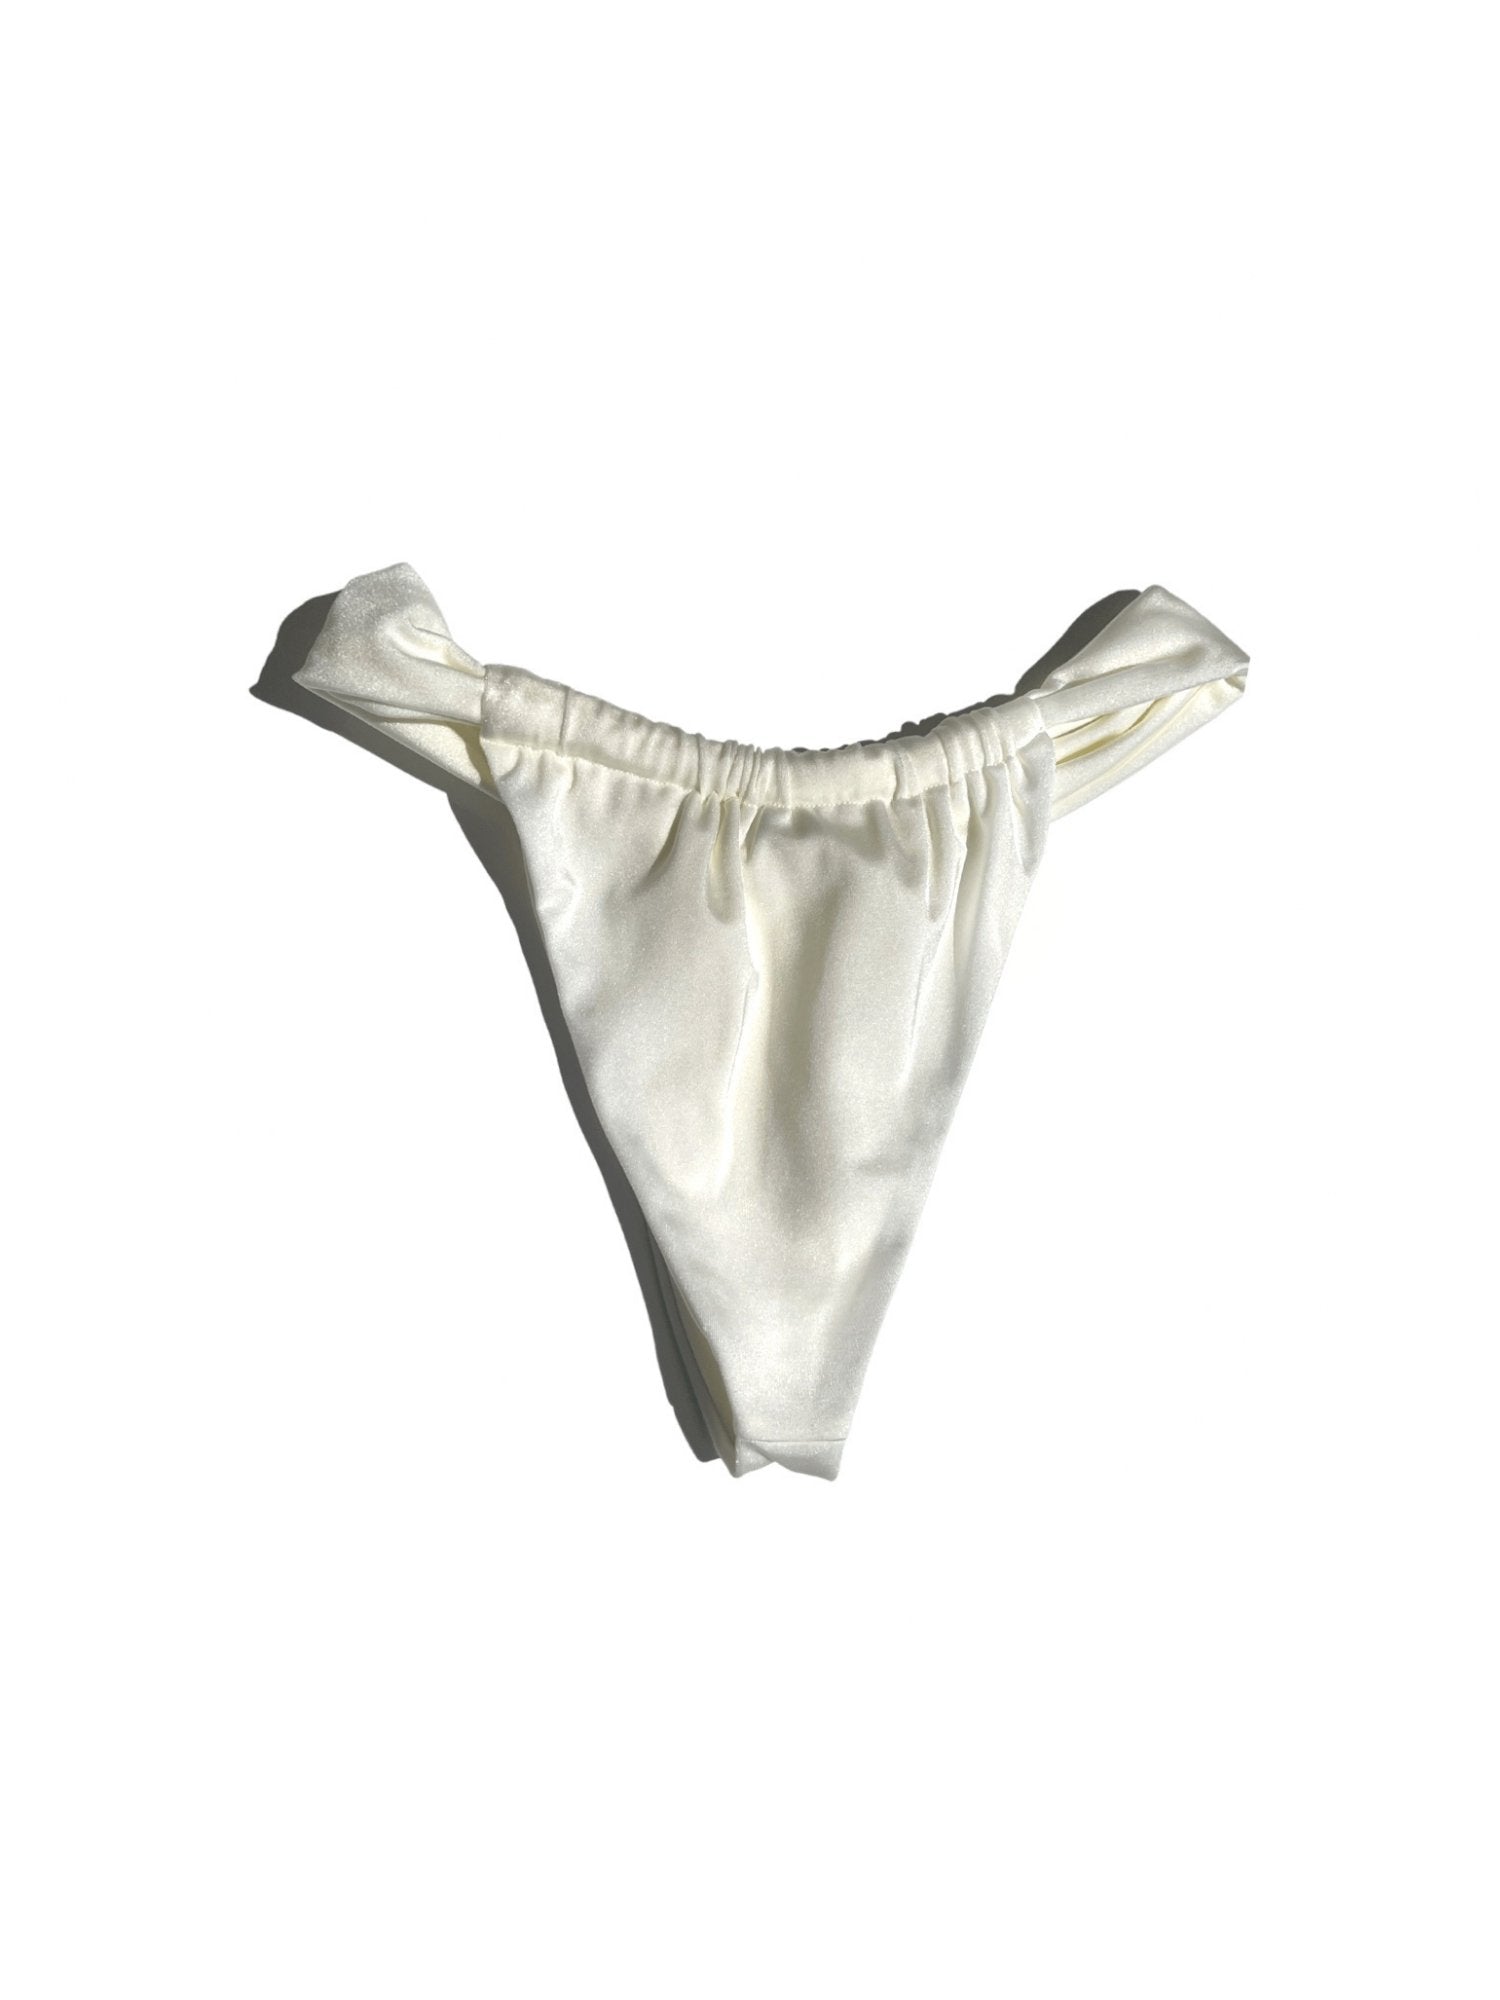 Avorio bikini bottom - Blanche Olia